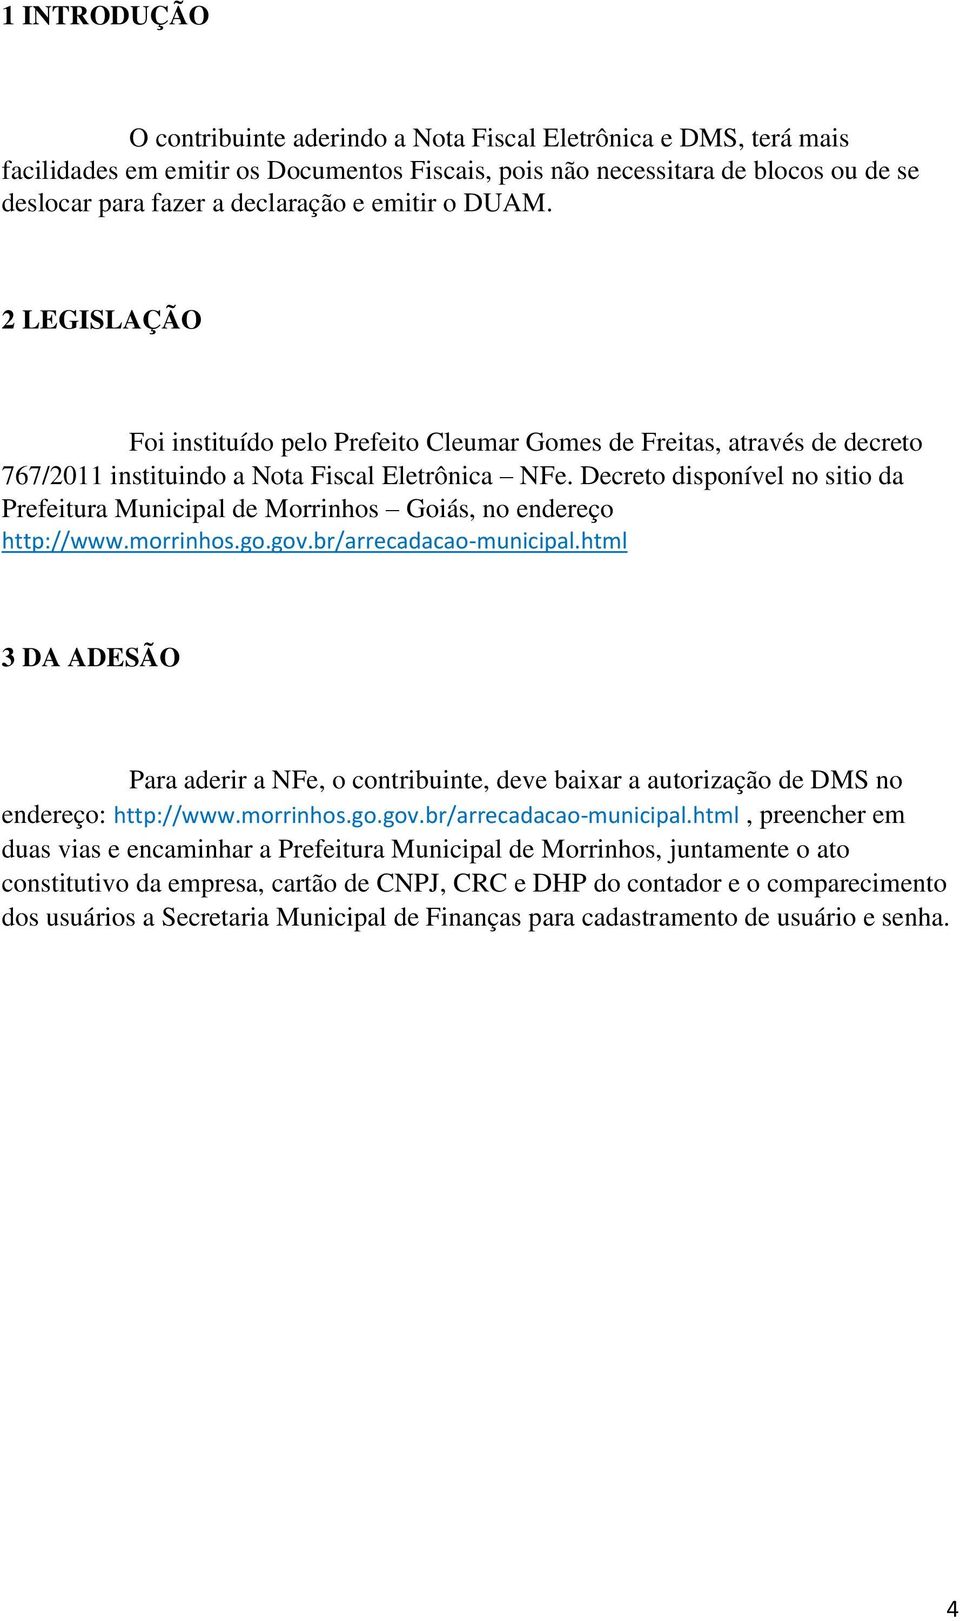 Decreto disponível no sitio da Prefeitura Municipal de Morrinhos Goiás, no endereço http://www.morrinhos.go.gov.br/arrecadacao-municipal.